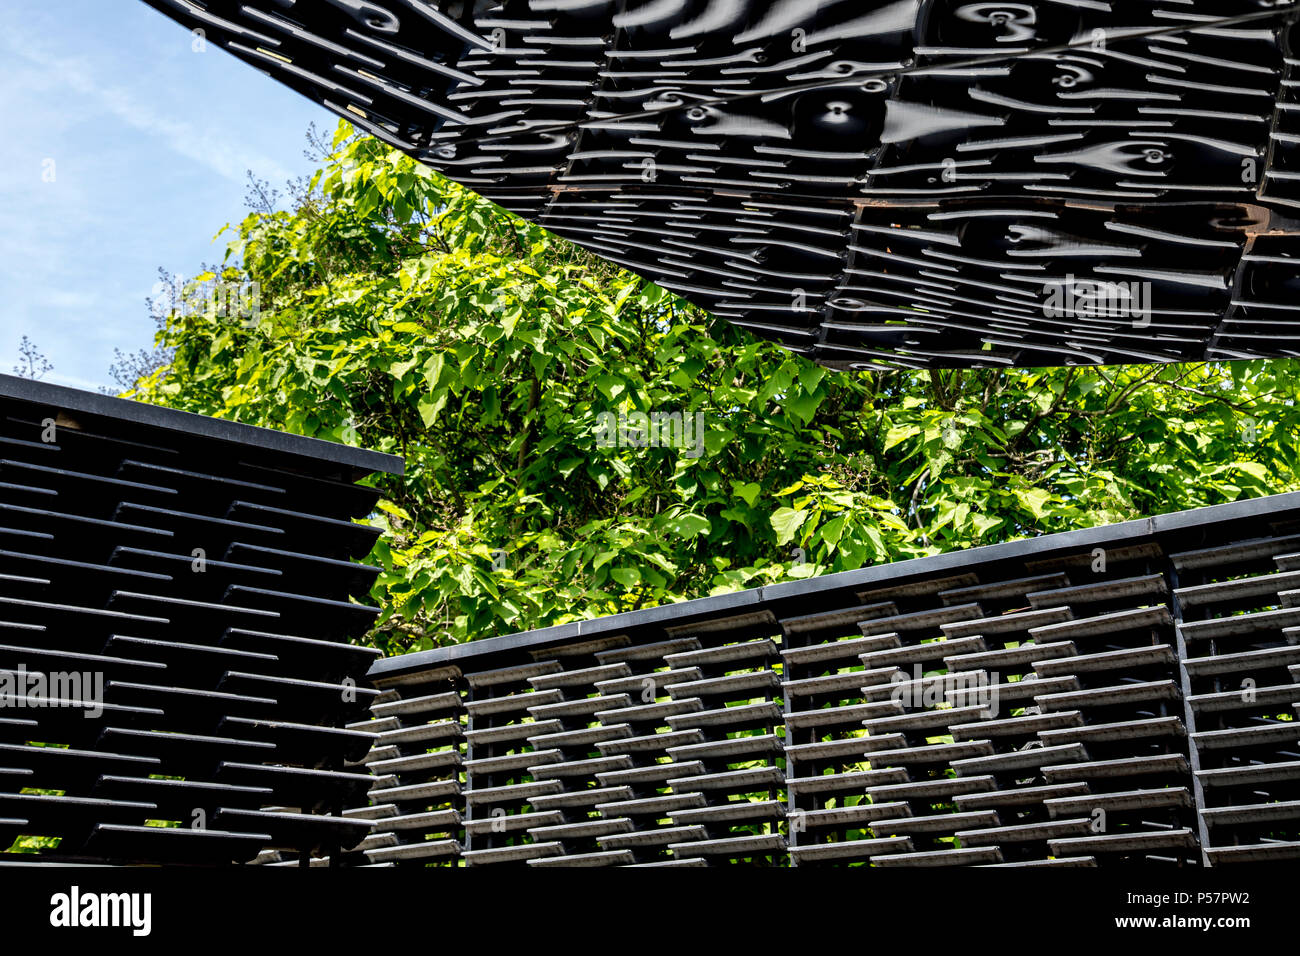 La serpentine Pavilion 2018 conçu par Frida Escobedo dans Hyde Park, Londres, UK Banque D'Images